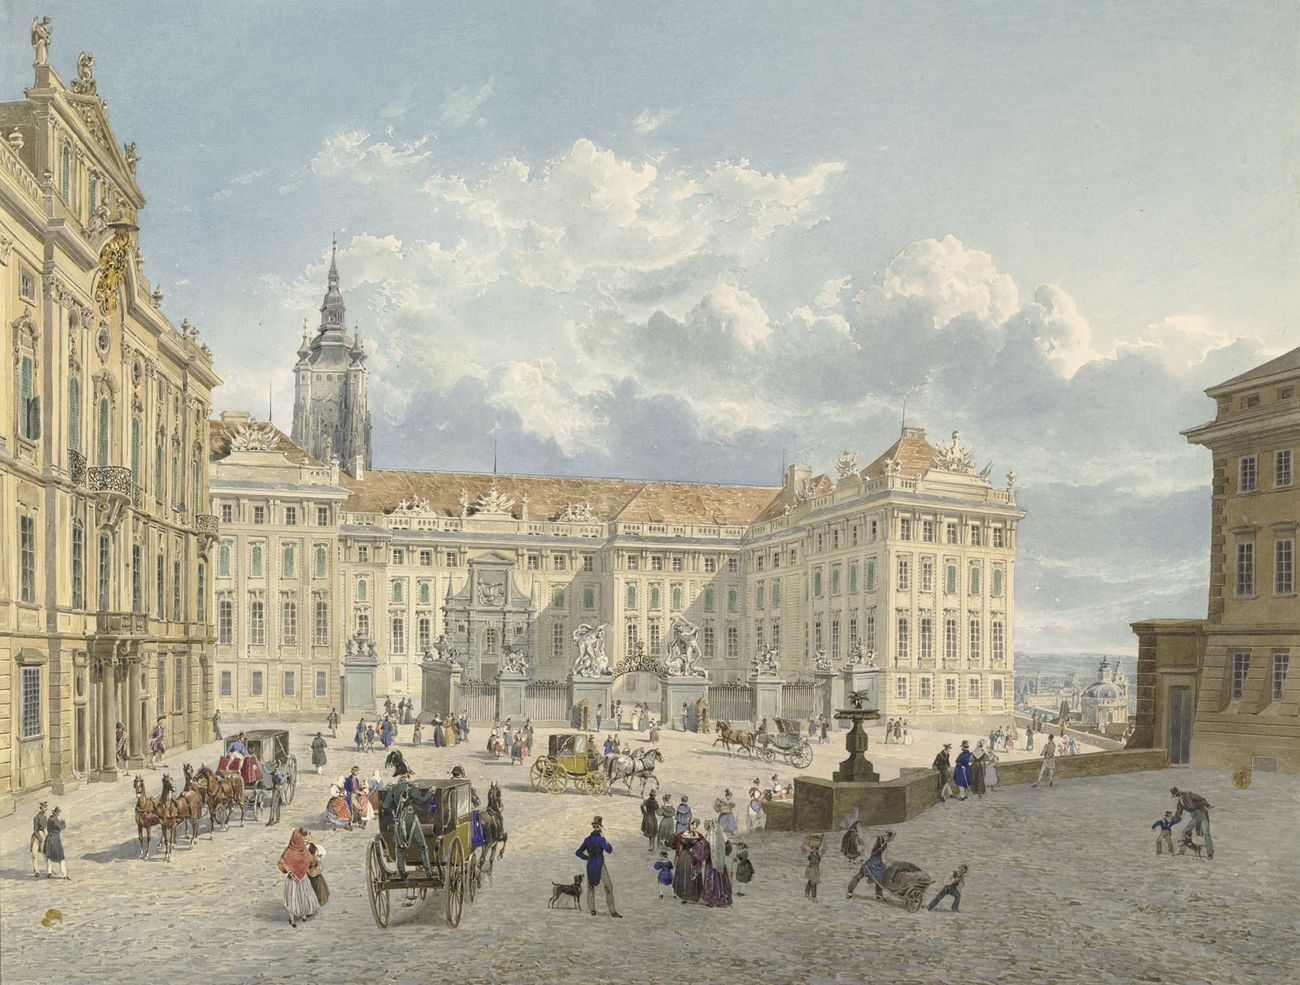 Eduard Gurk, Hradčany, Praga, 1838. Albertina Museum, Vienna